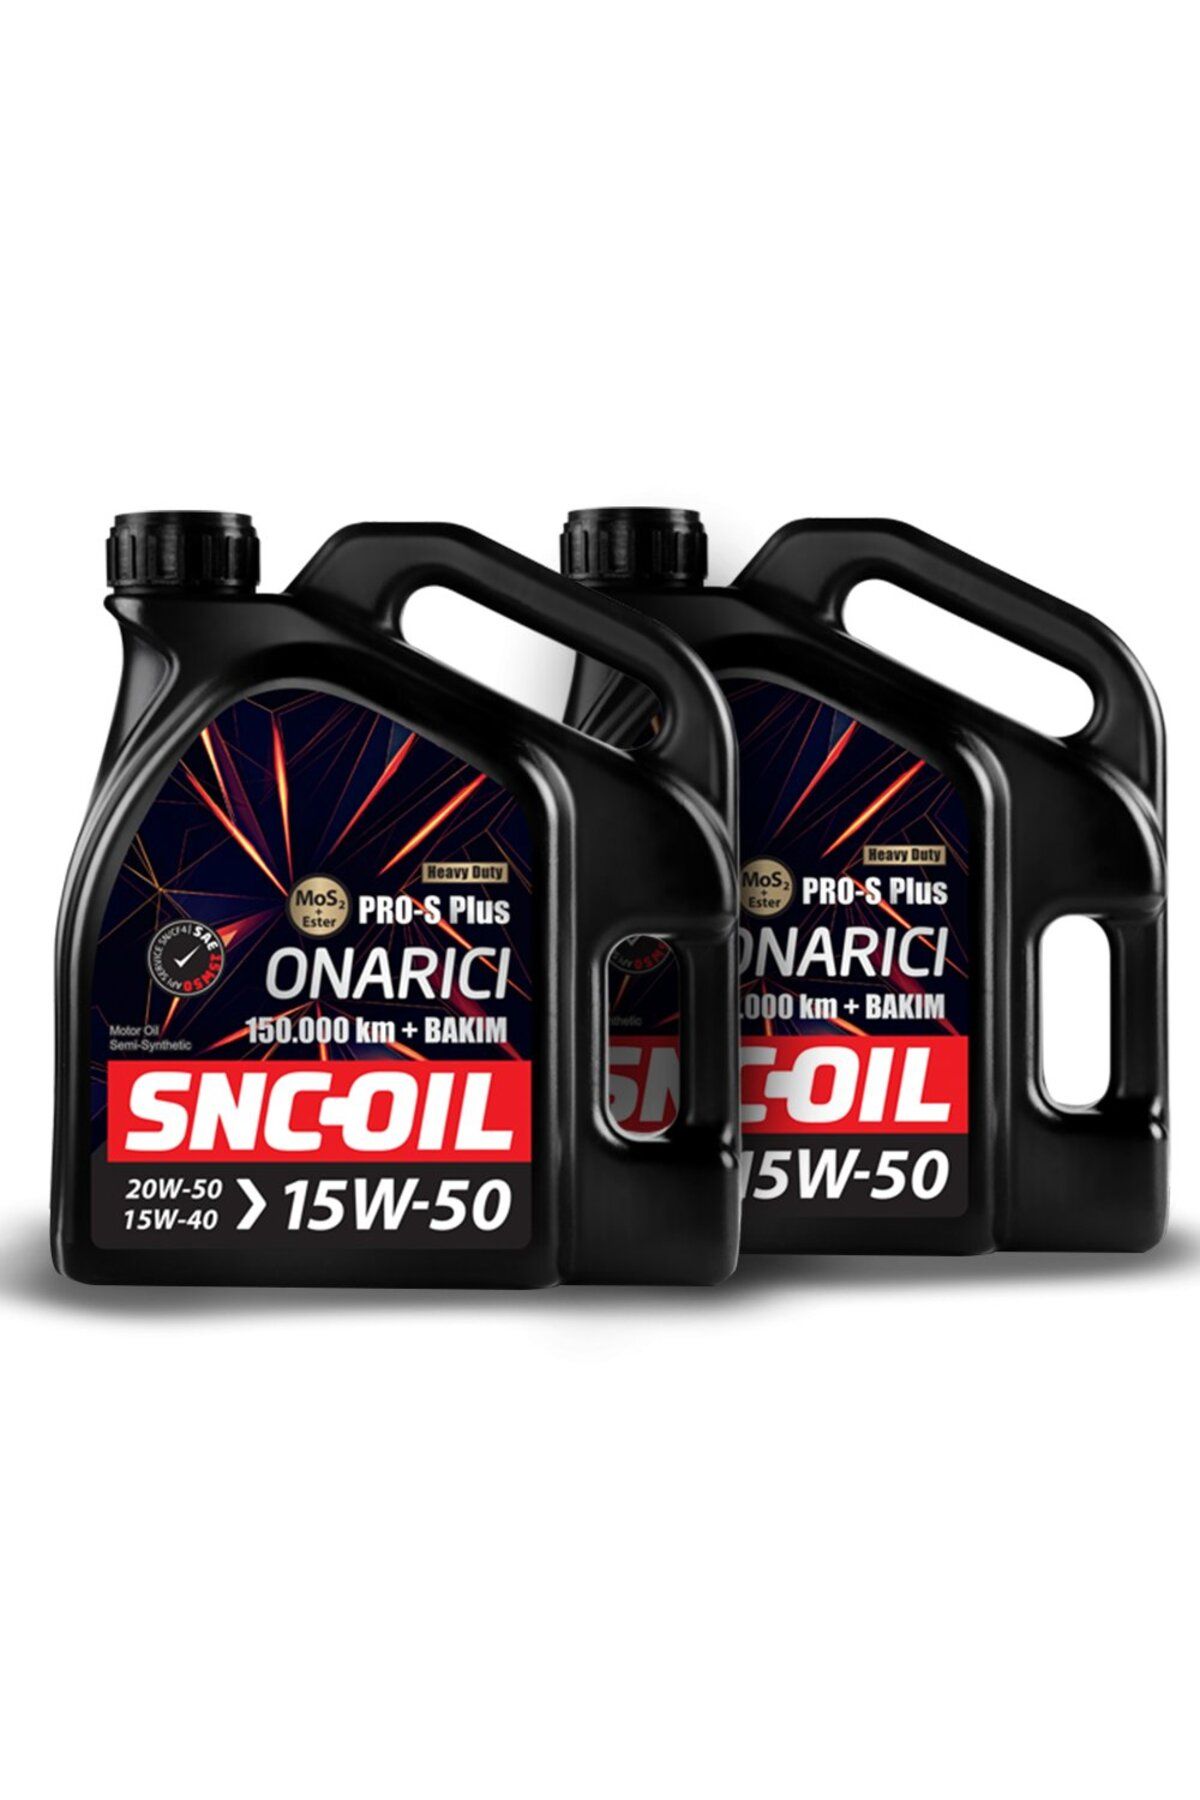 snc Icon Group - SNC-OIL 150.000 Km + Bakım Pro-S Plus Onarıcı 15W-50 Motor Yağı (4+4)